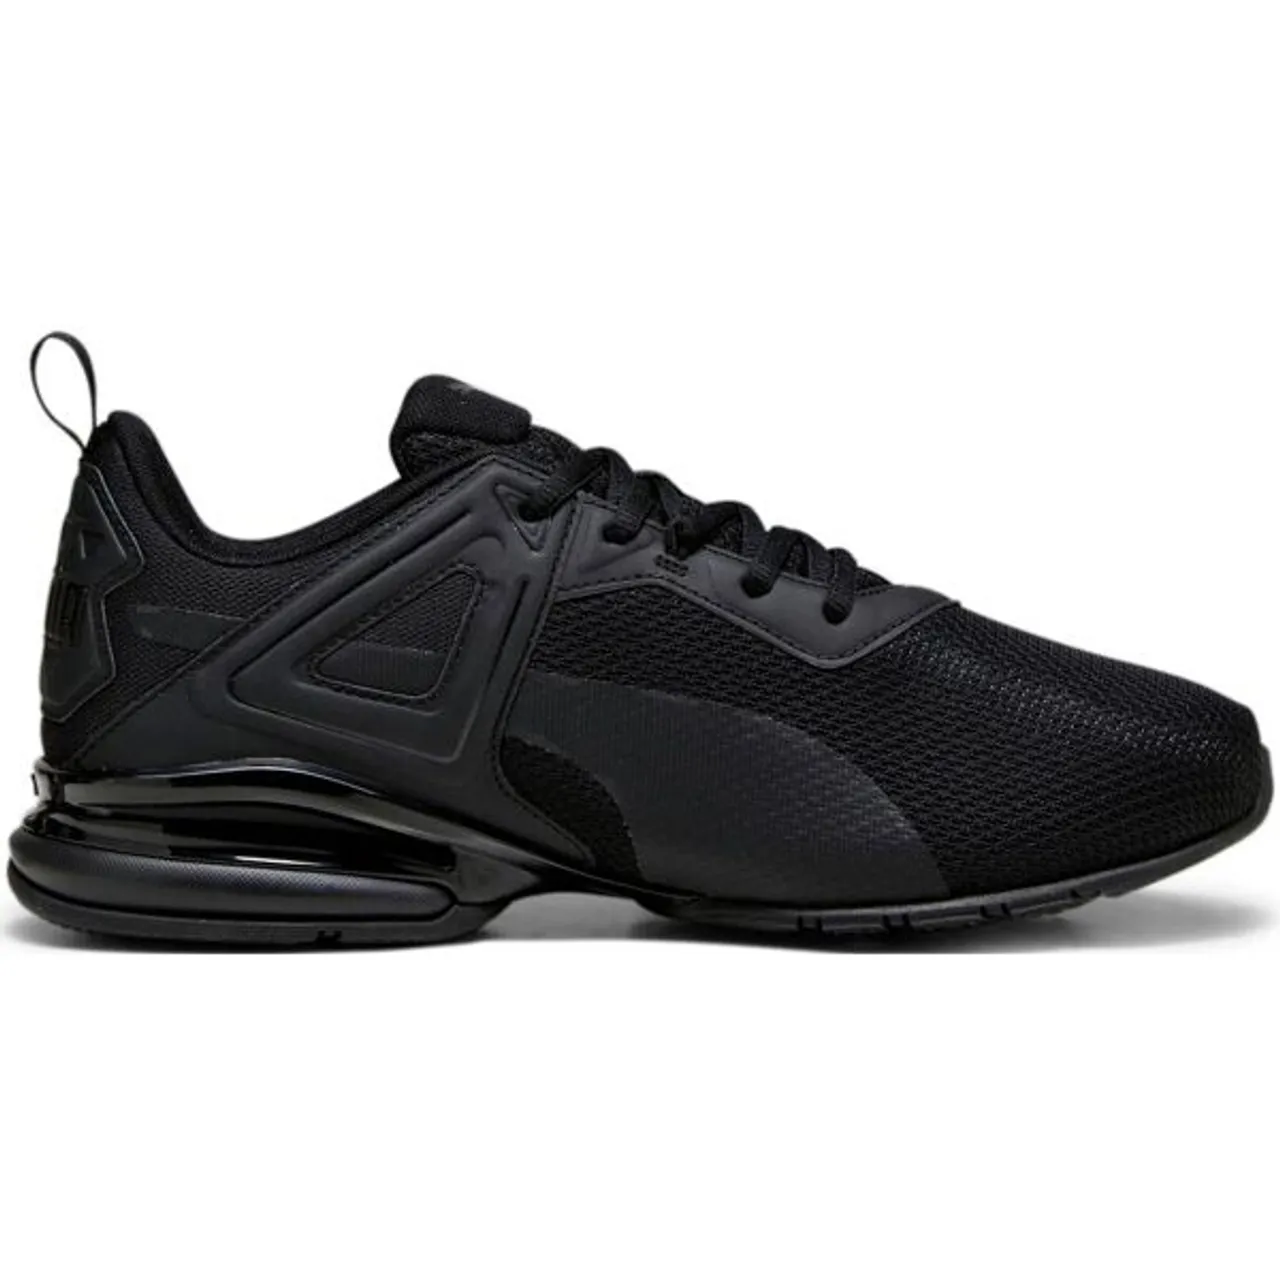 Sneaker PUMA "HASTE" Gr. 43, schwarz (puma black, dark coal) Schuhe Laufschuhe